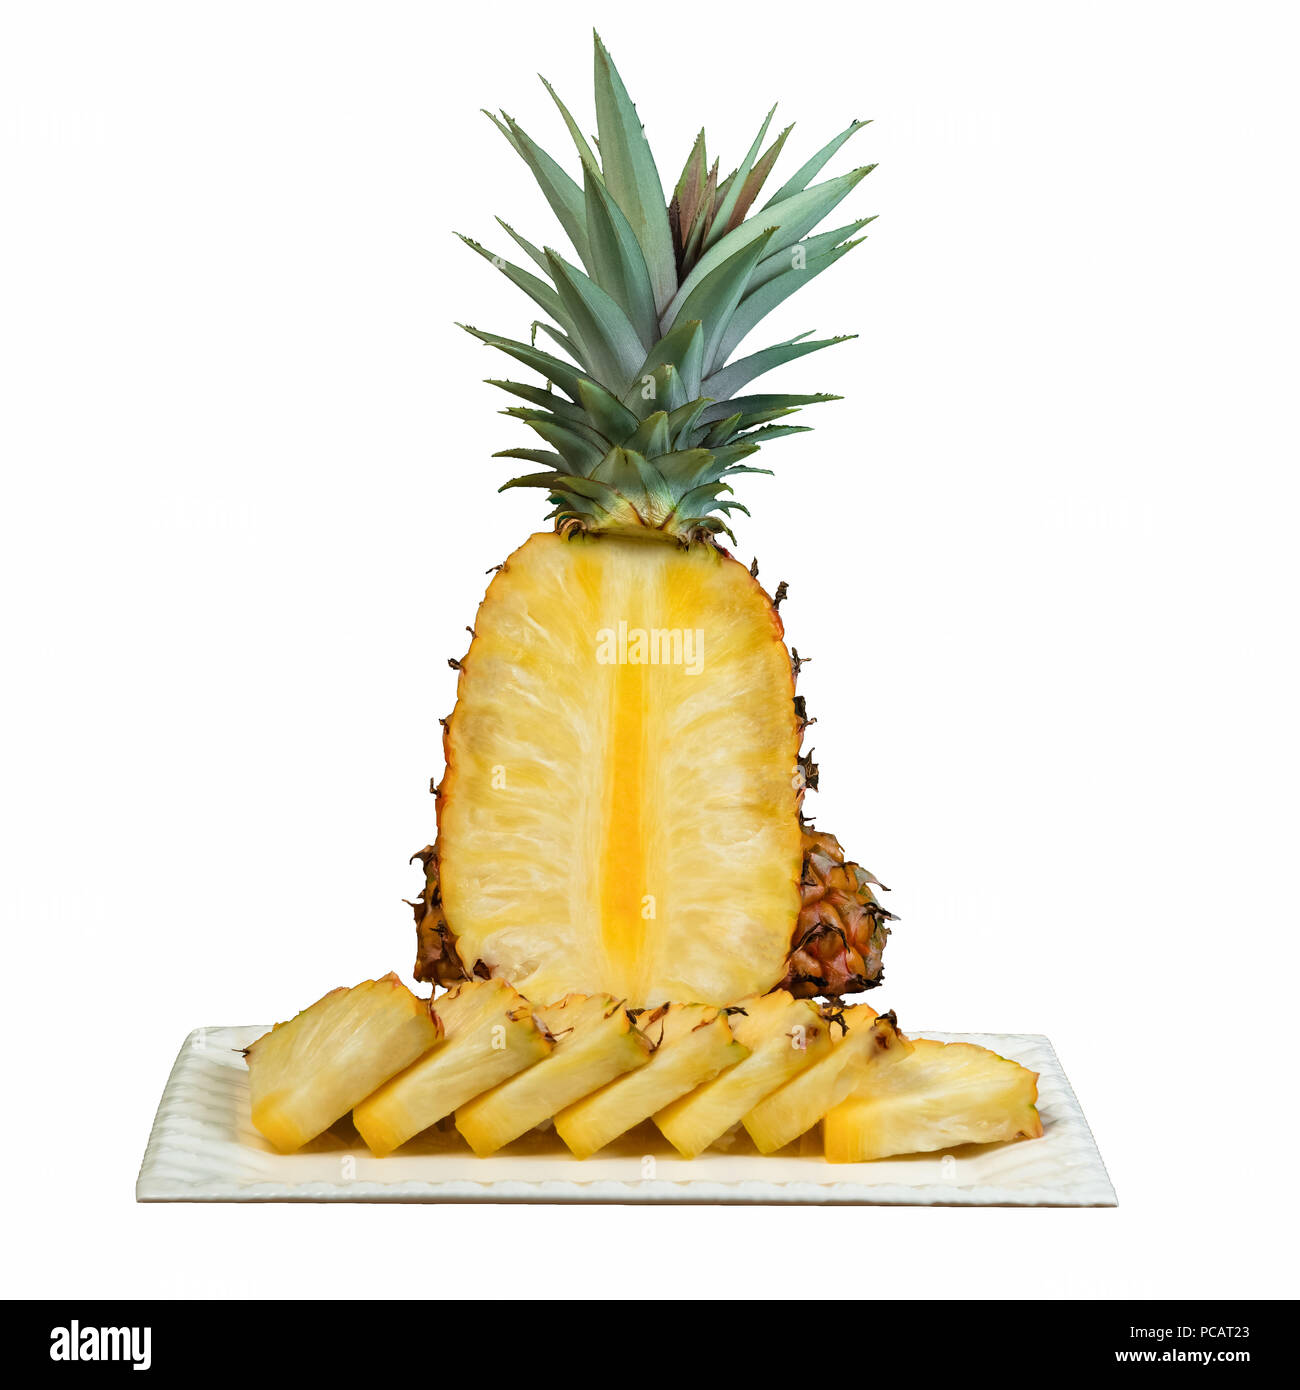 Ananas clipping Ausschnitt auf weiße Platte Schnitt in Keile weißer Hintergrund Stockfoto